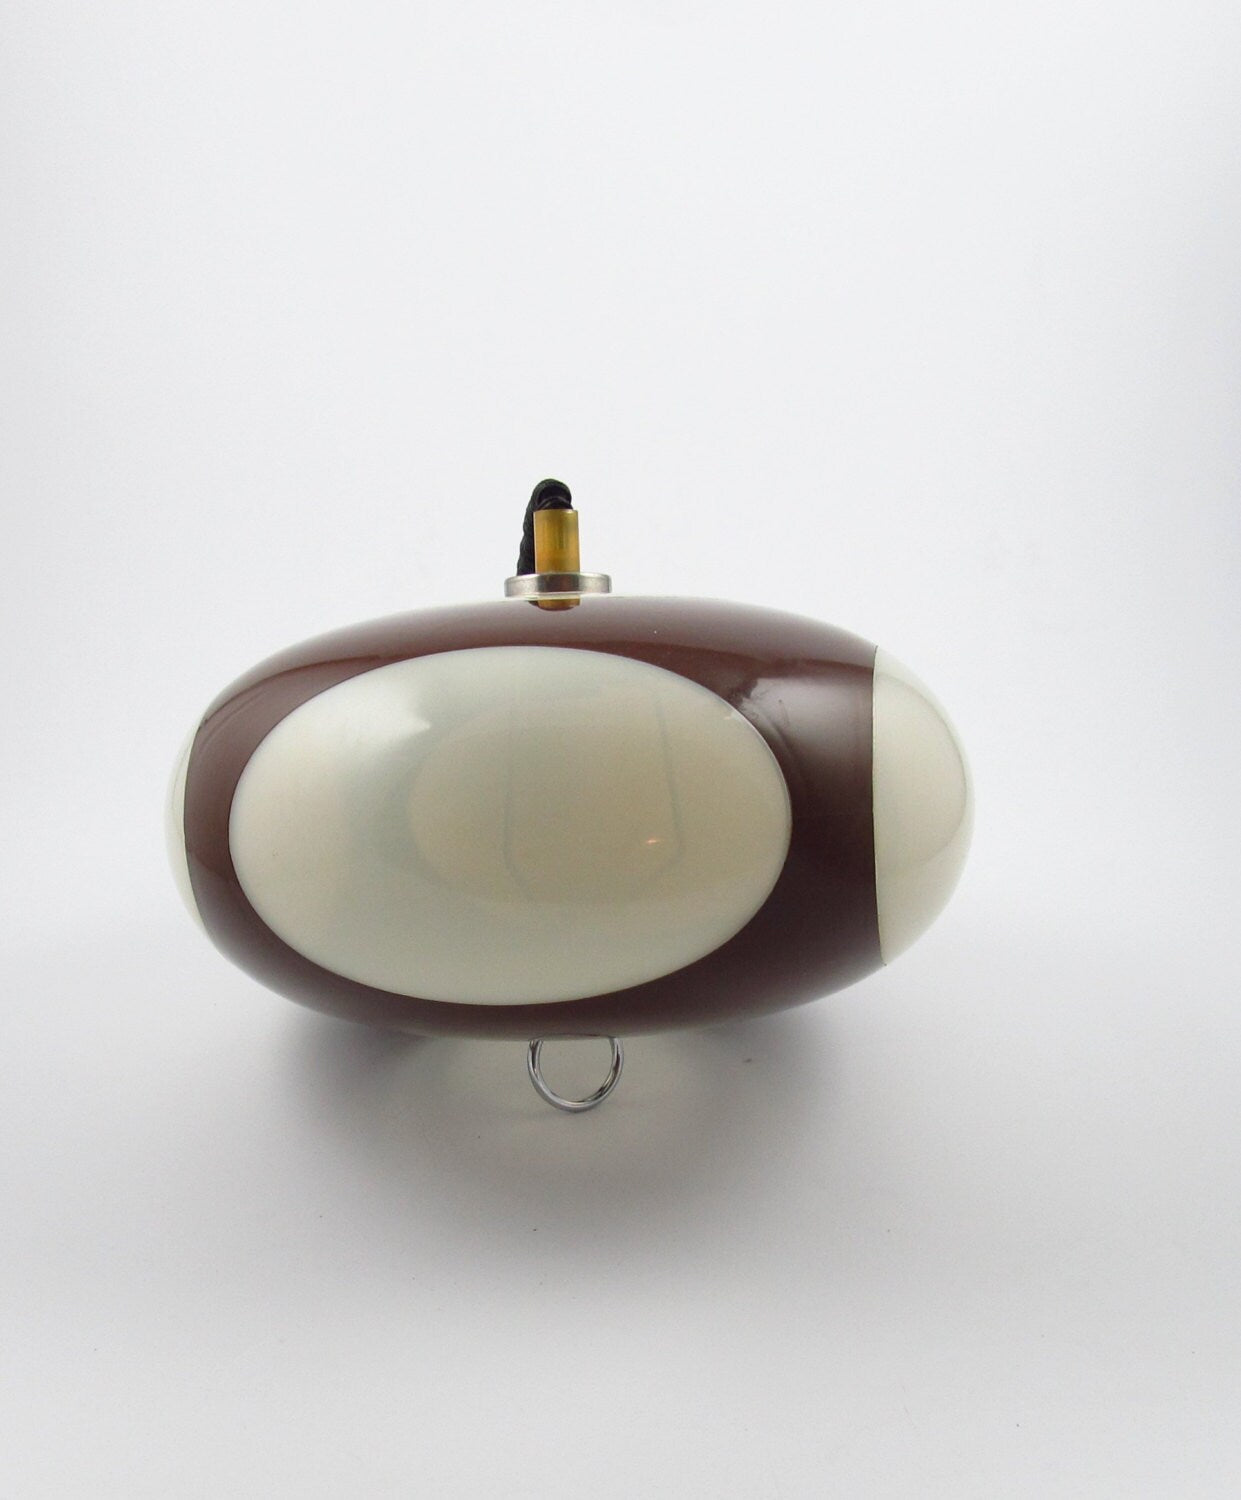 Lámpara colgante UFO Space age de Luigi Colani, lámpara de diseño de los años 70